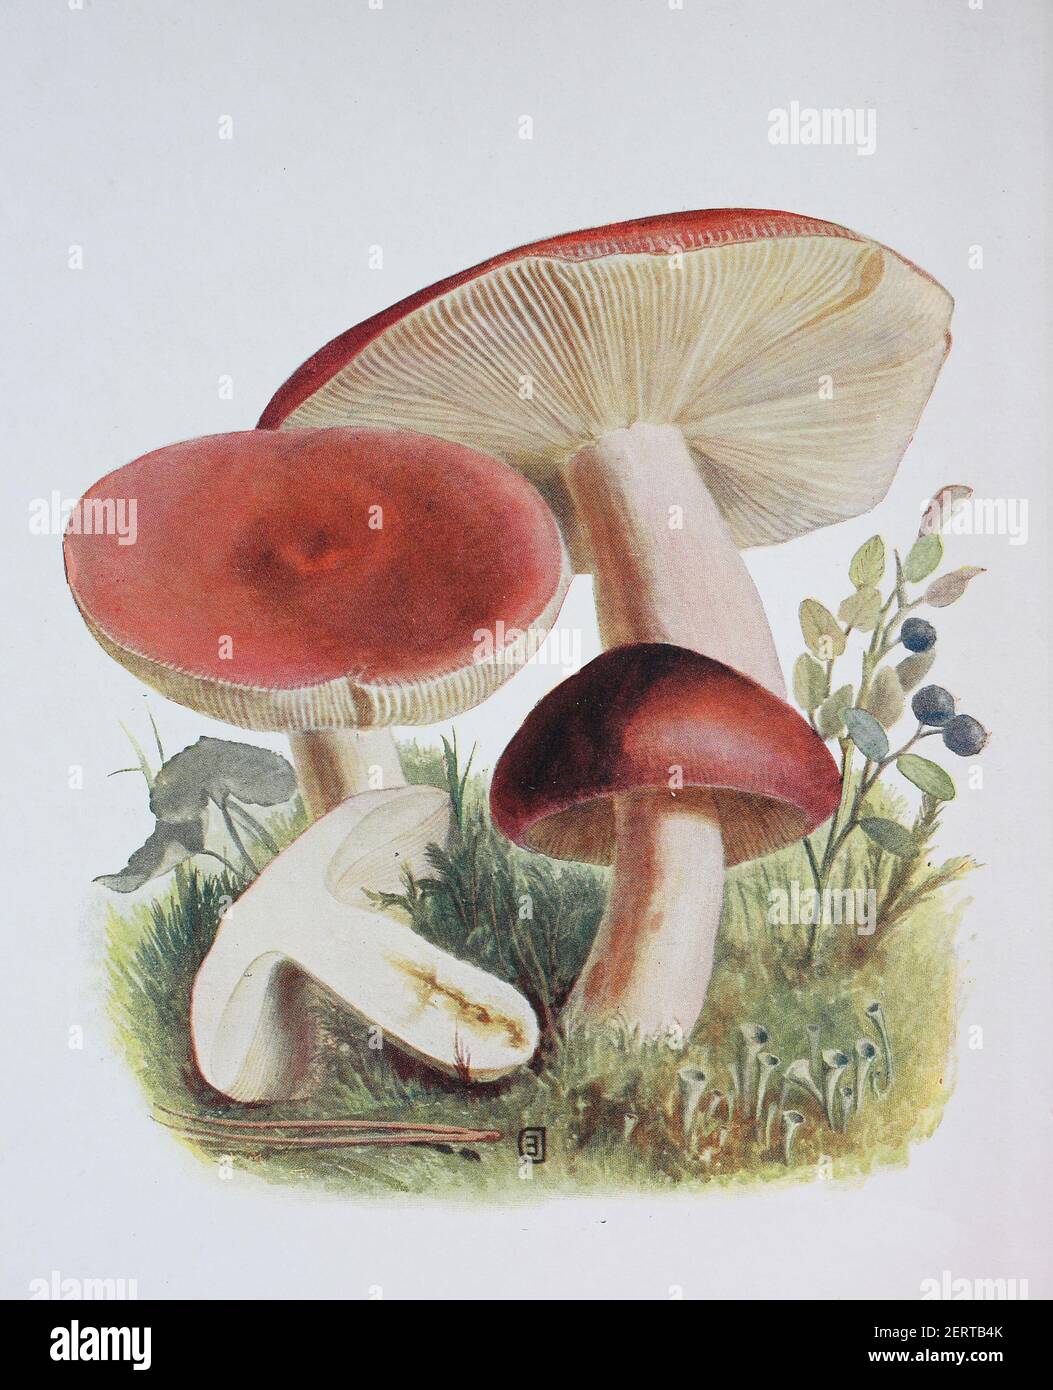 La russula sanguinaria, comunemente nota come brittlegill sanguinoso, è un fungo dai colori brillanti, membro del genere Russula, che ha il nome comune di brittlegills, riproduzione digitale di un'immagine di Emil Doerstling (1859-1940) Foto Stock